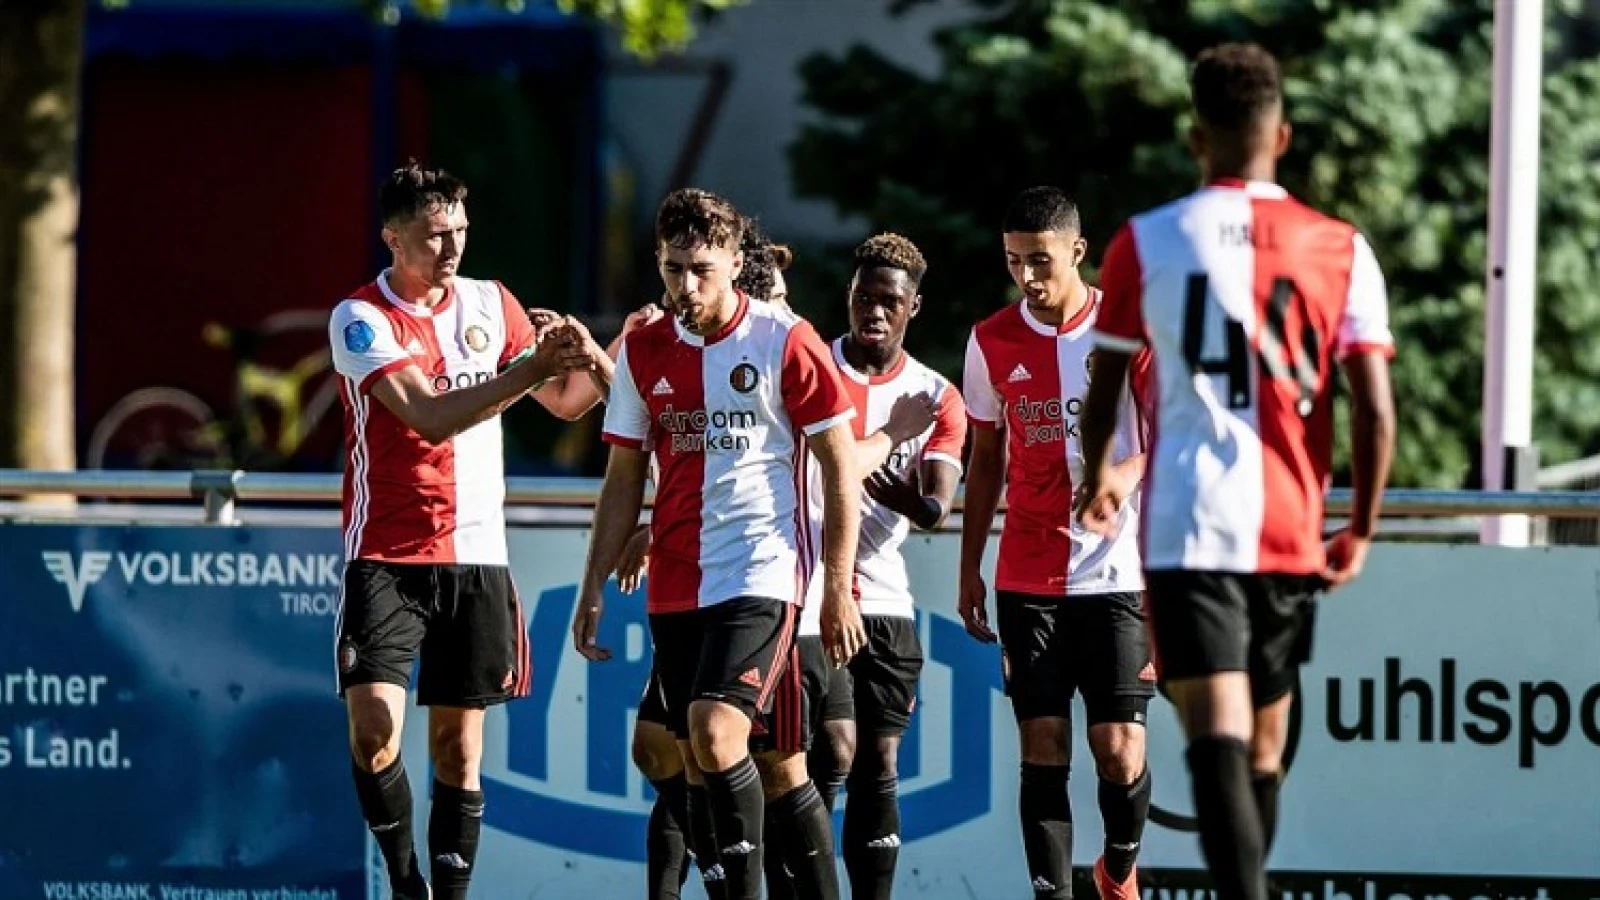 Oefenwedstrijd tussen Feyenoord en Panathinaikos live uitgezonden